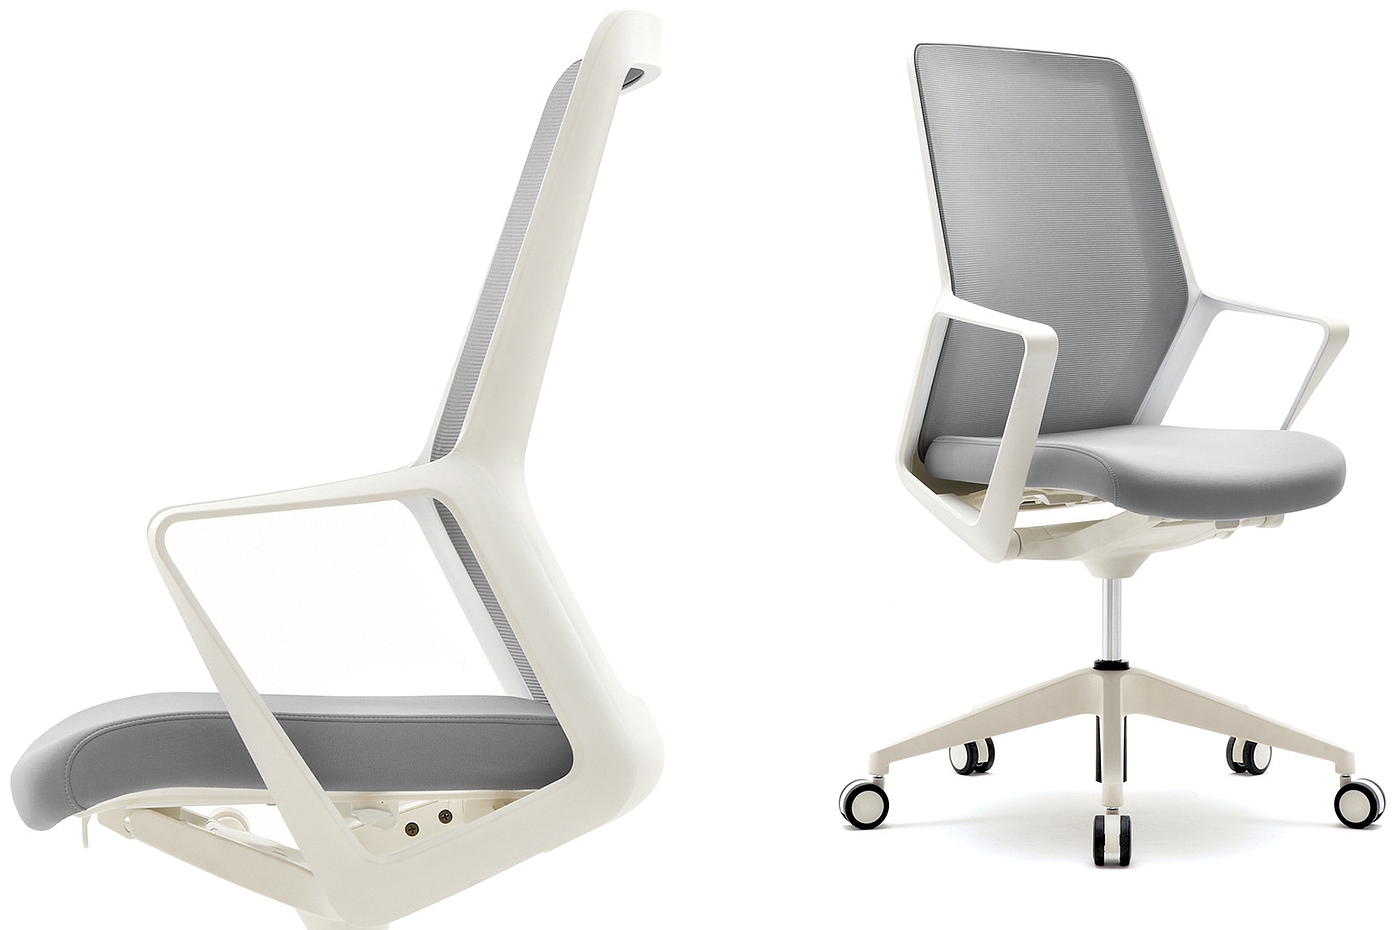 椅子，概念设计，旋转椅，人体工程学，概念办公椅，FLO概念座椅，